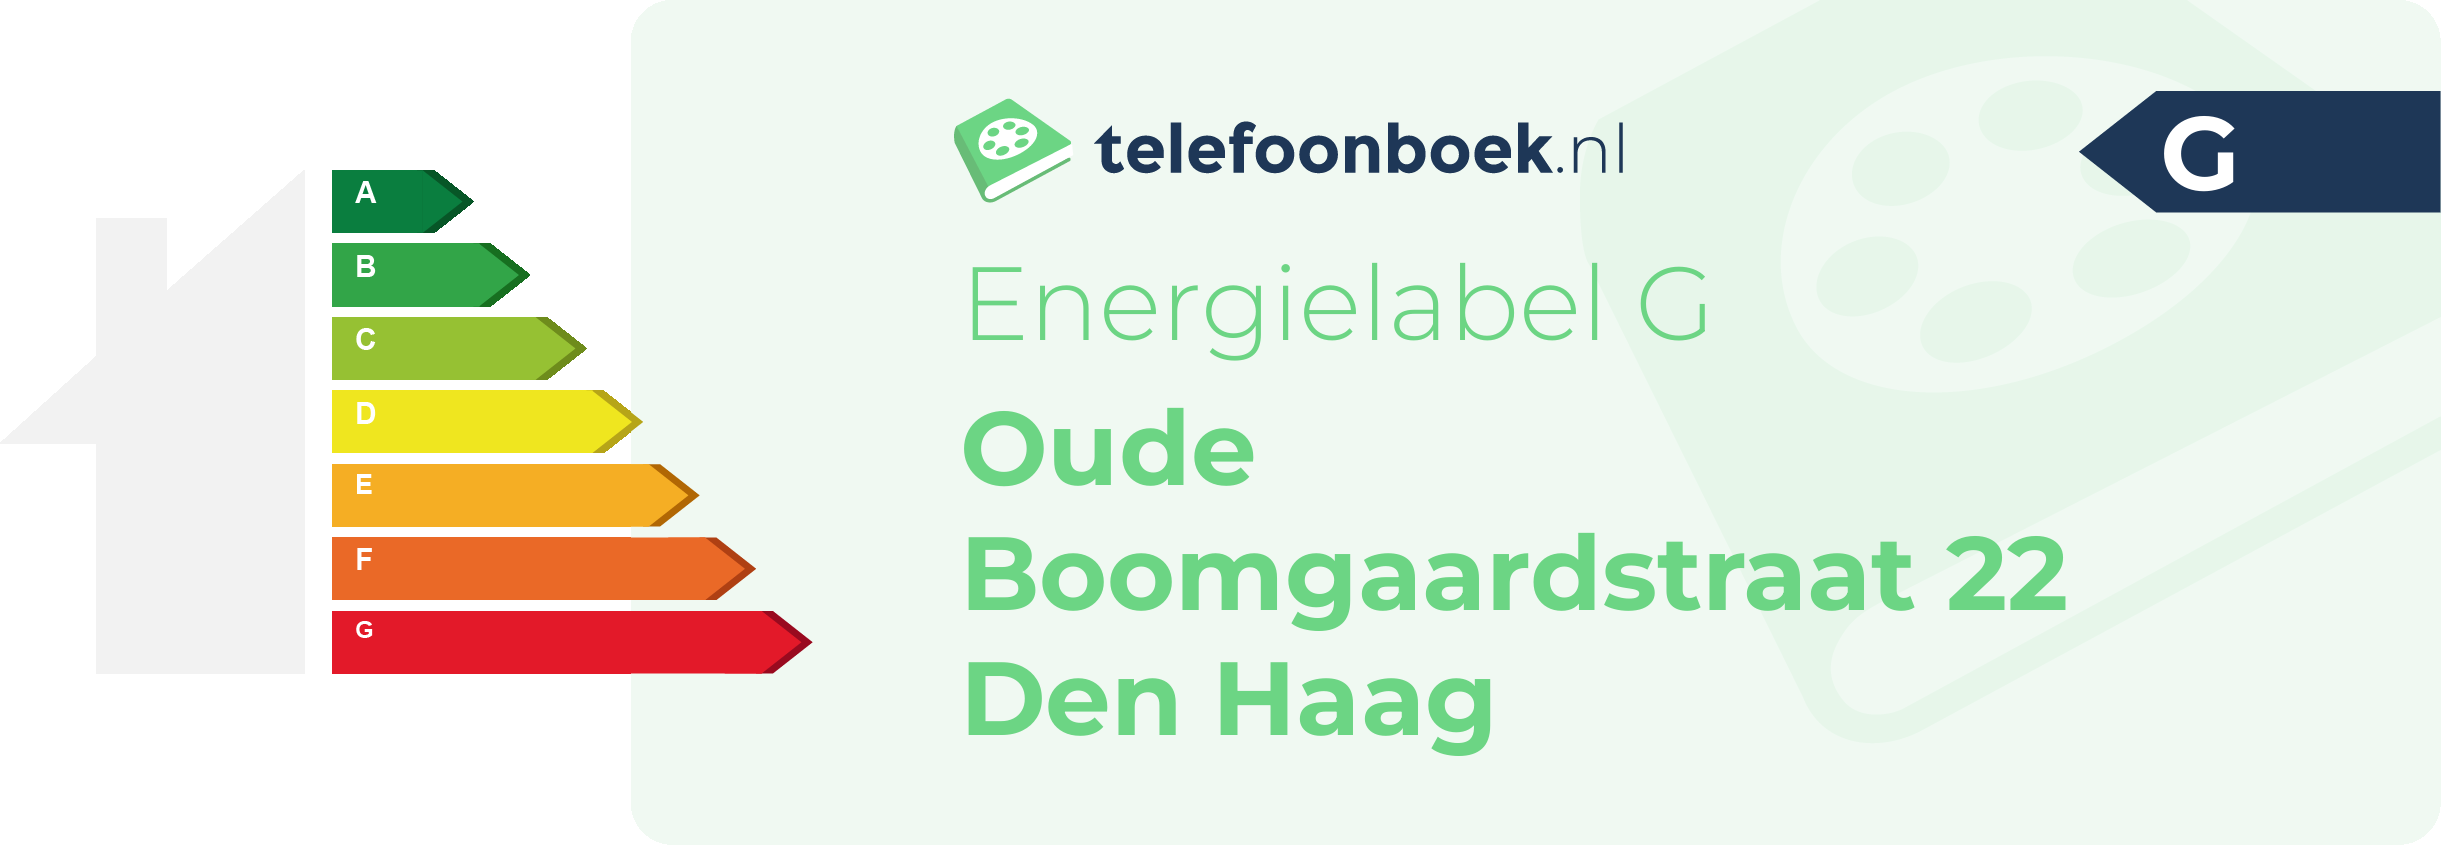 Energielabel Oude Boomgaardstraat 22 Den Haag